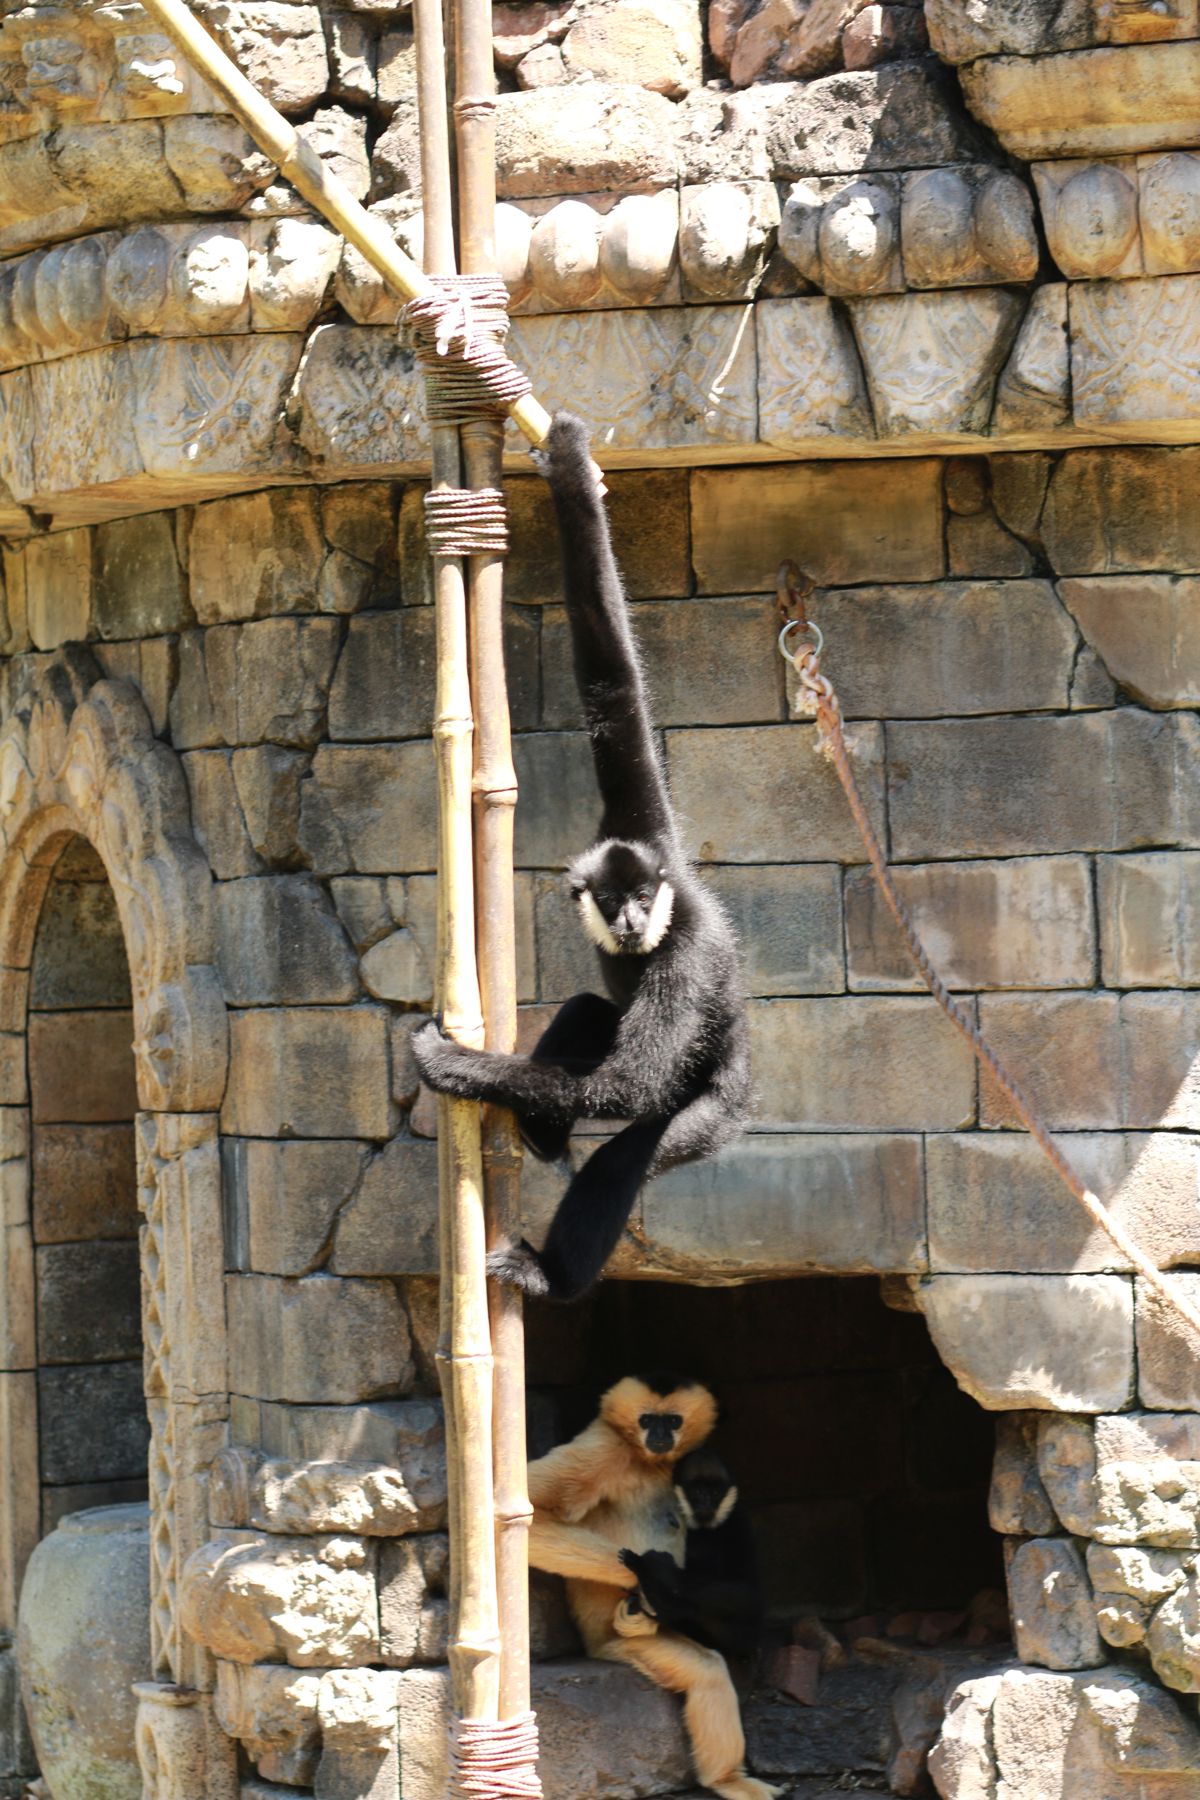 Animal Kingdom monkeys